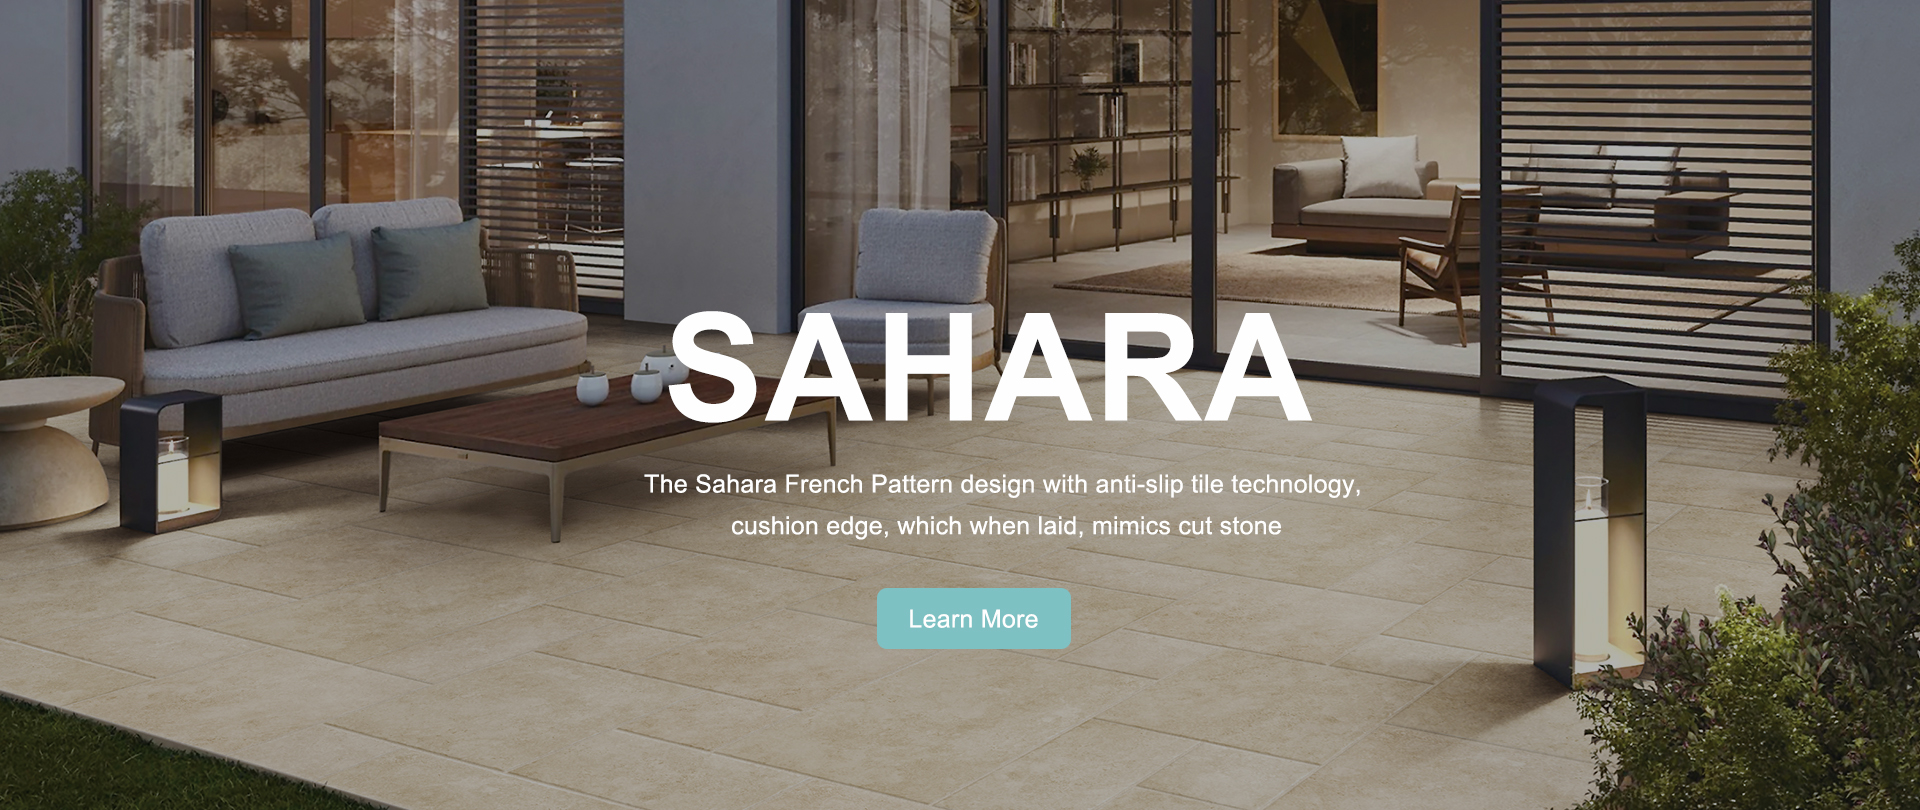 SAHARA french pattern